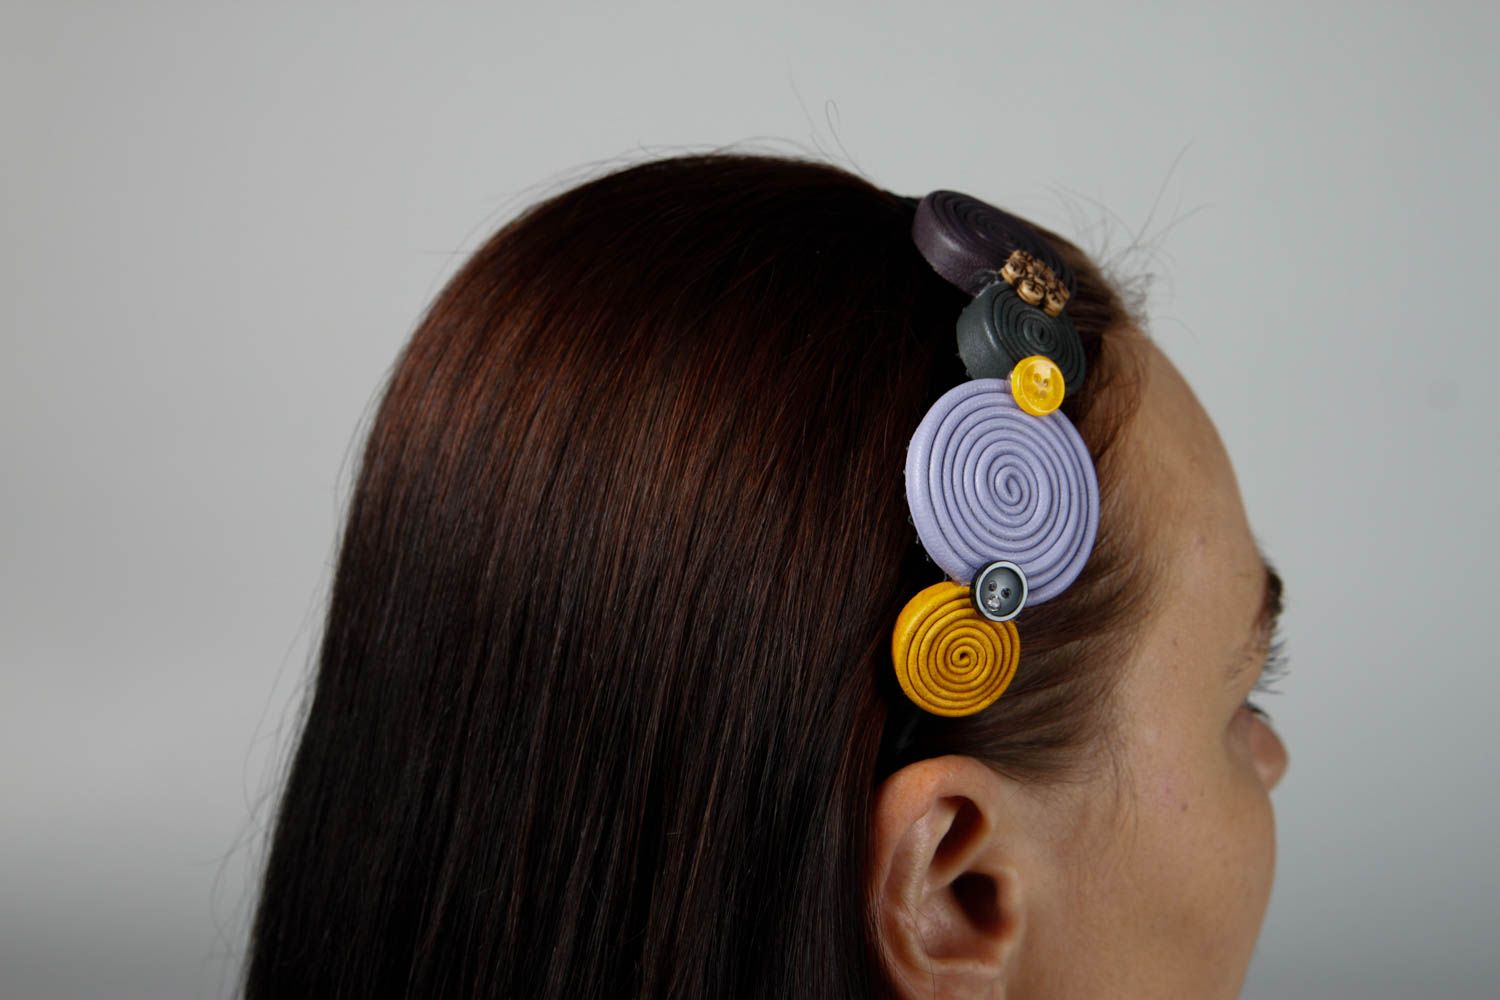 Аксессуар для волос ручной работы яркий обруч на голову женский аксессуар фото 2